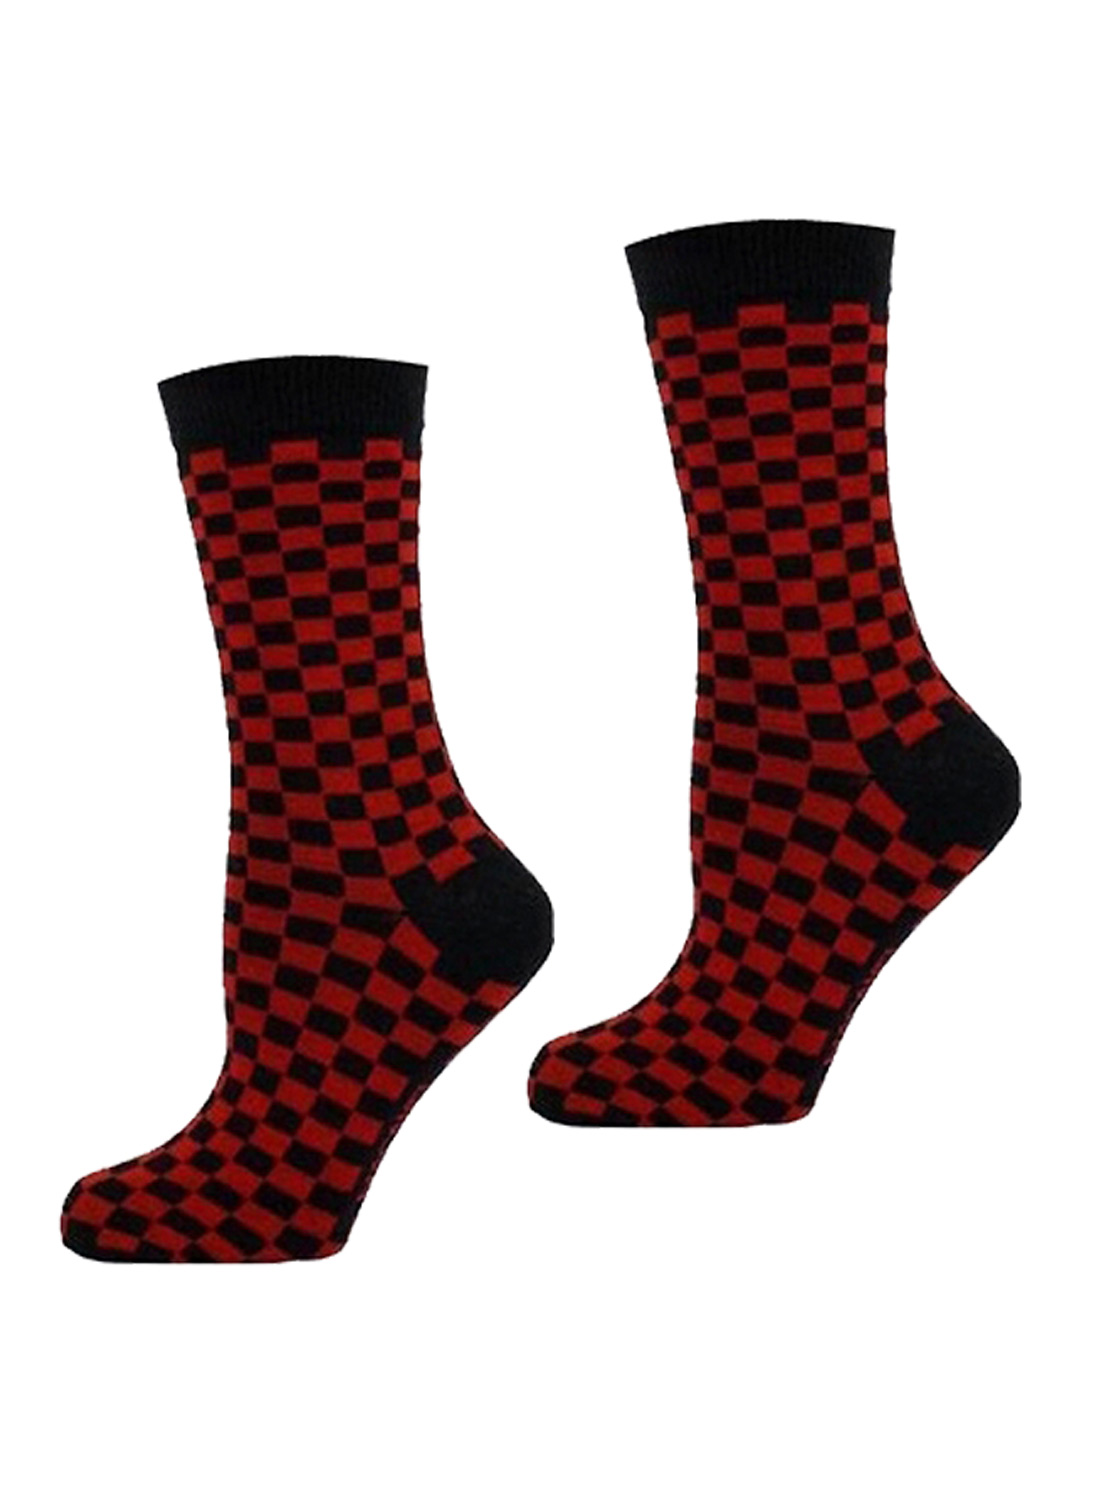 Men checkered Socks Black/Red